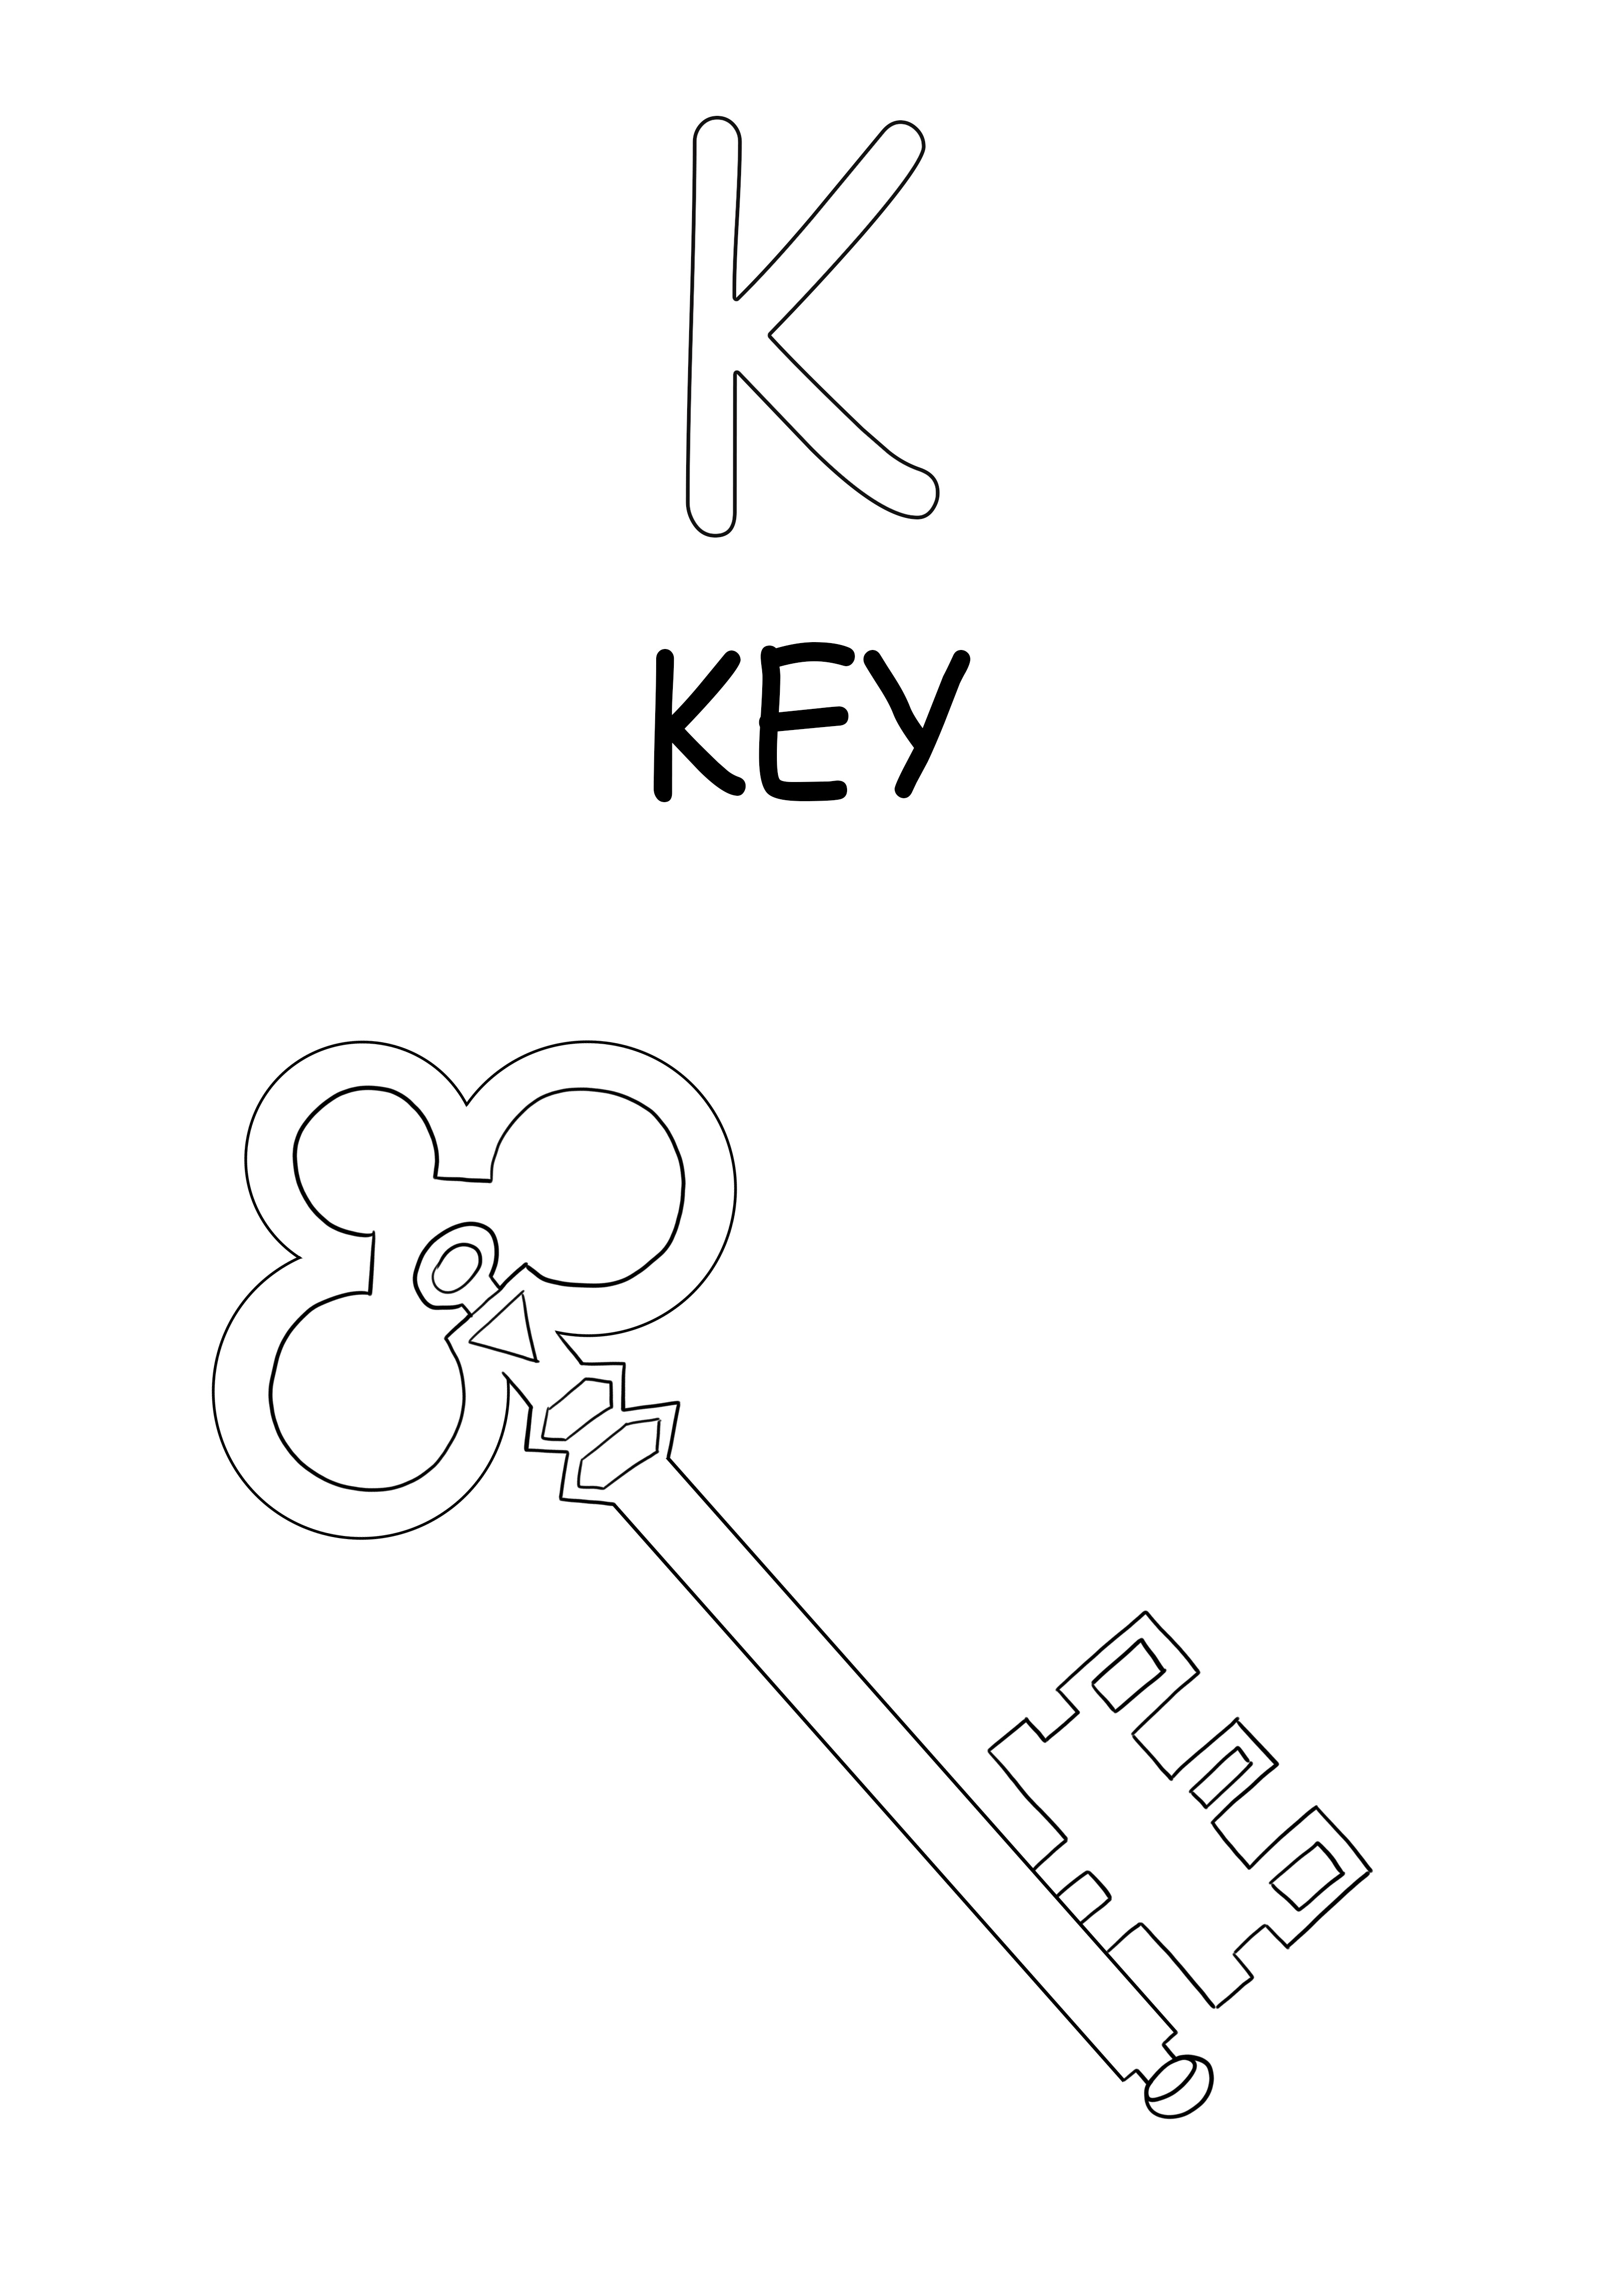 Der Großbuchstabe K steht für die Schlüsselfarbe und das freie Druckbild